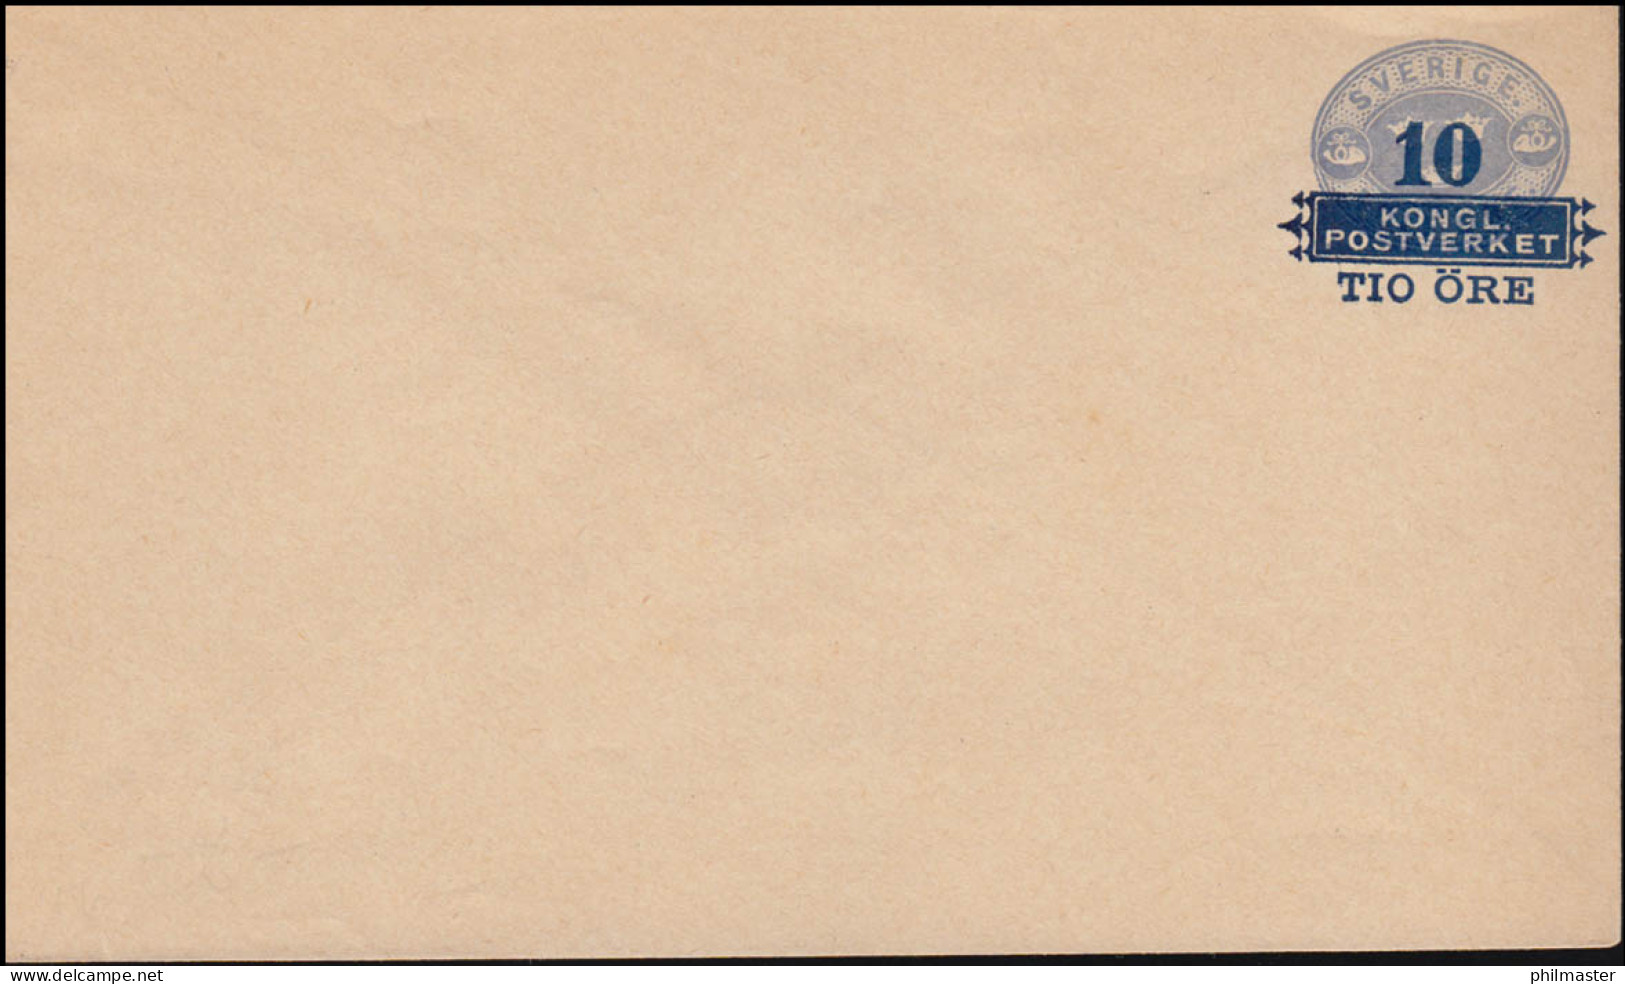 Schweden Umschlag U 6 Drei Kronen Mit Aufdruck 10 Auf 12 Öre 1889, ** Postfrisch - Ganzsachen